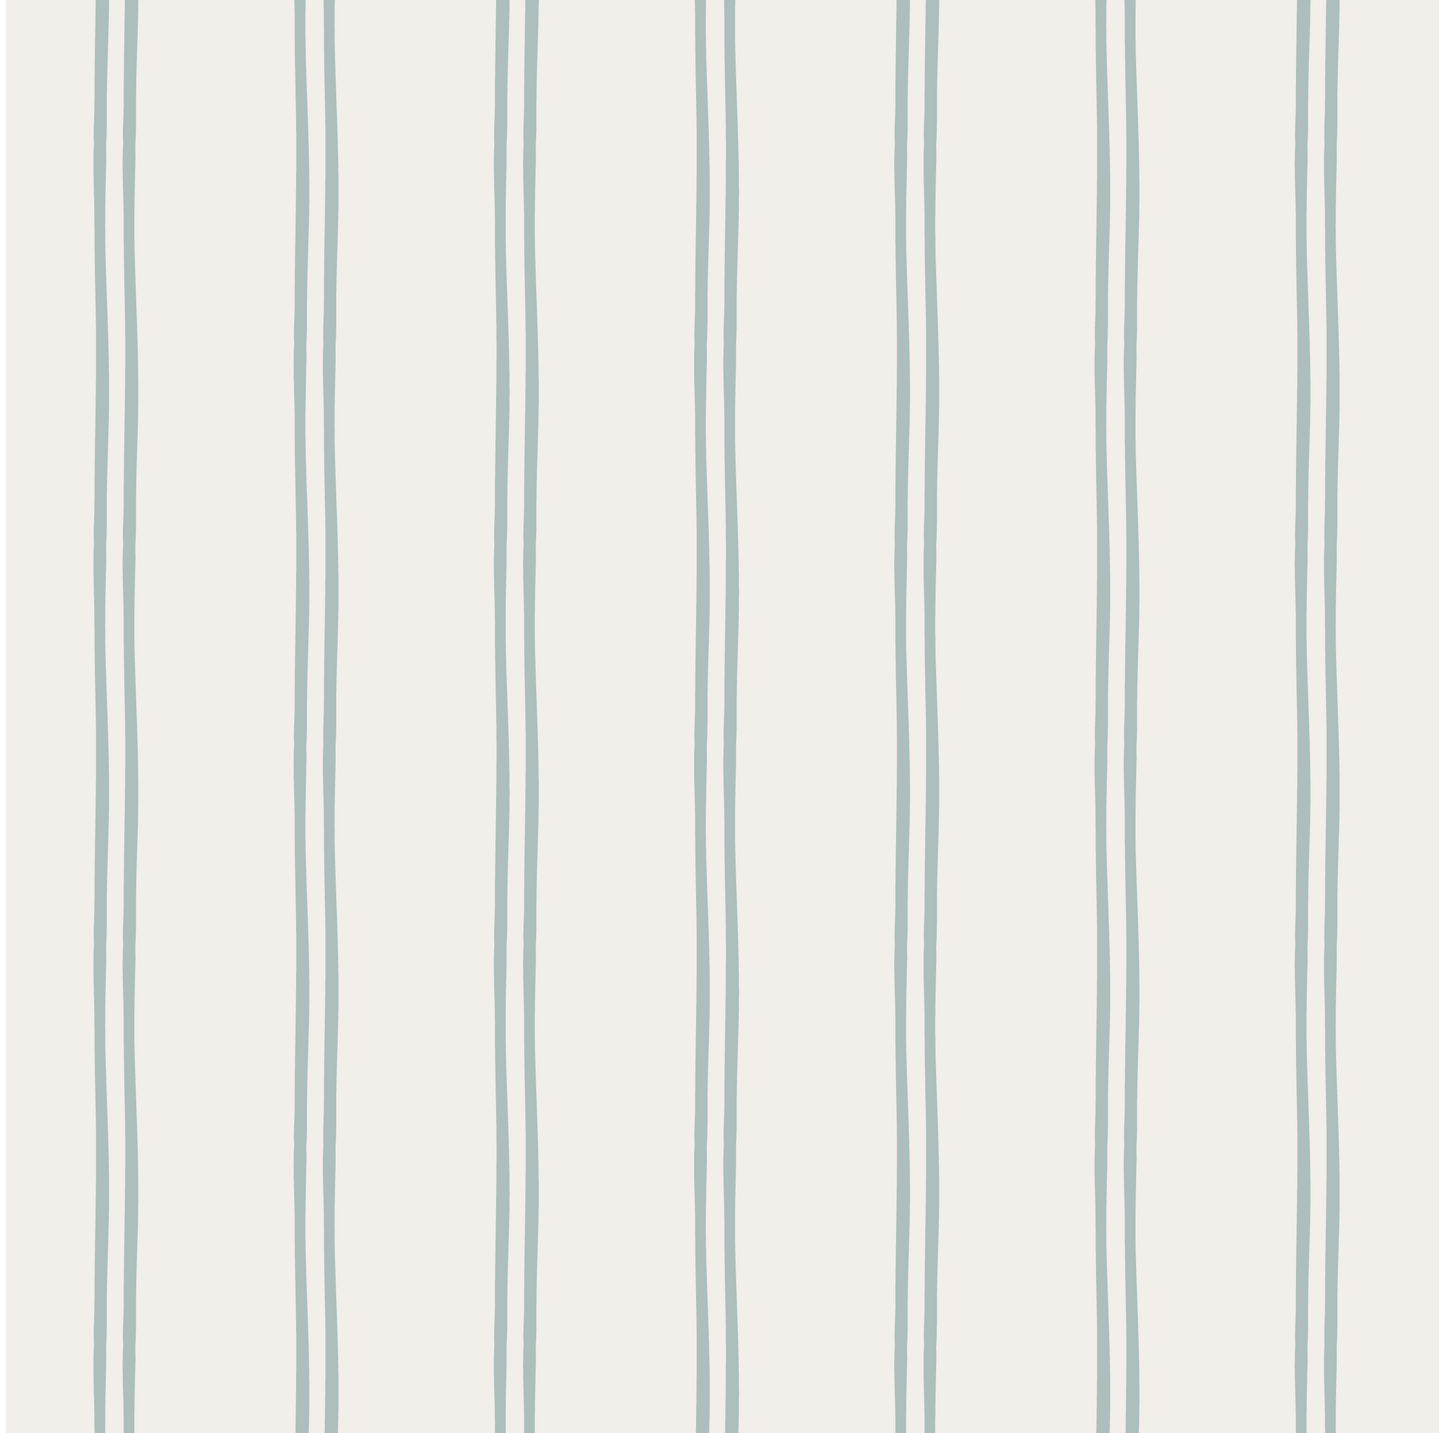 Vintage Double Stripes Wallpaper (Blue)